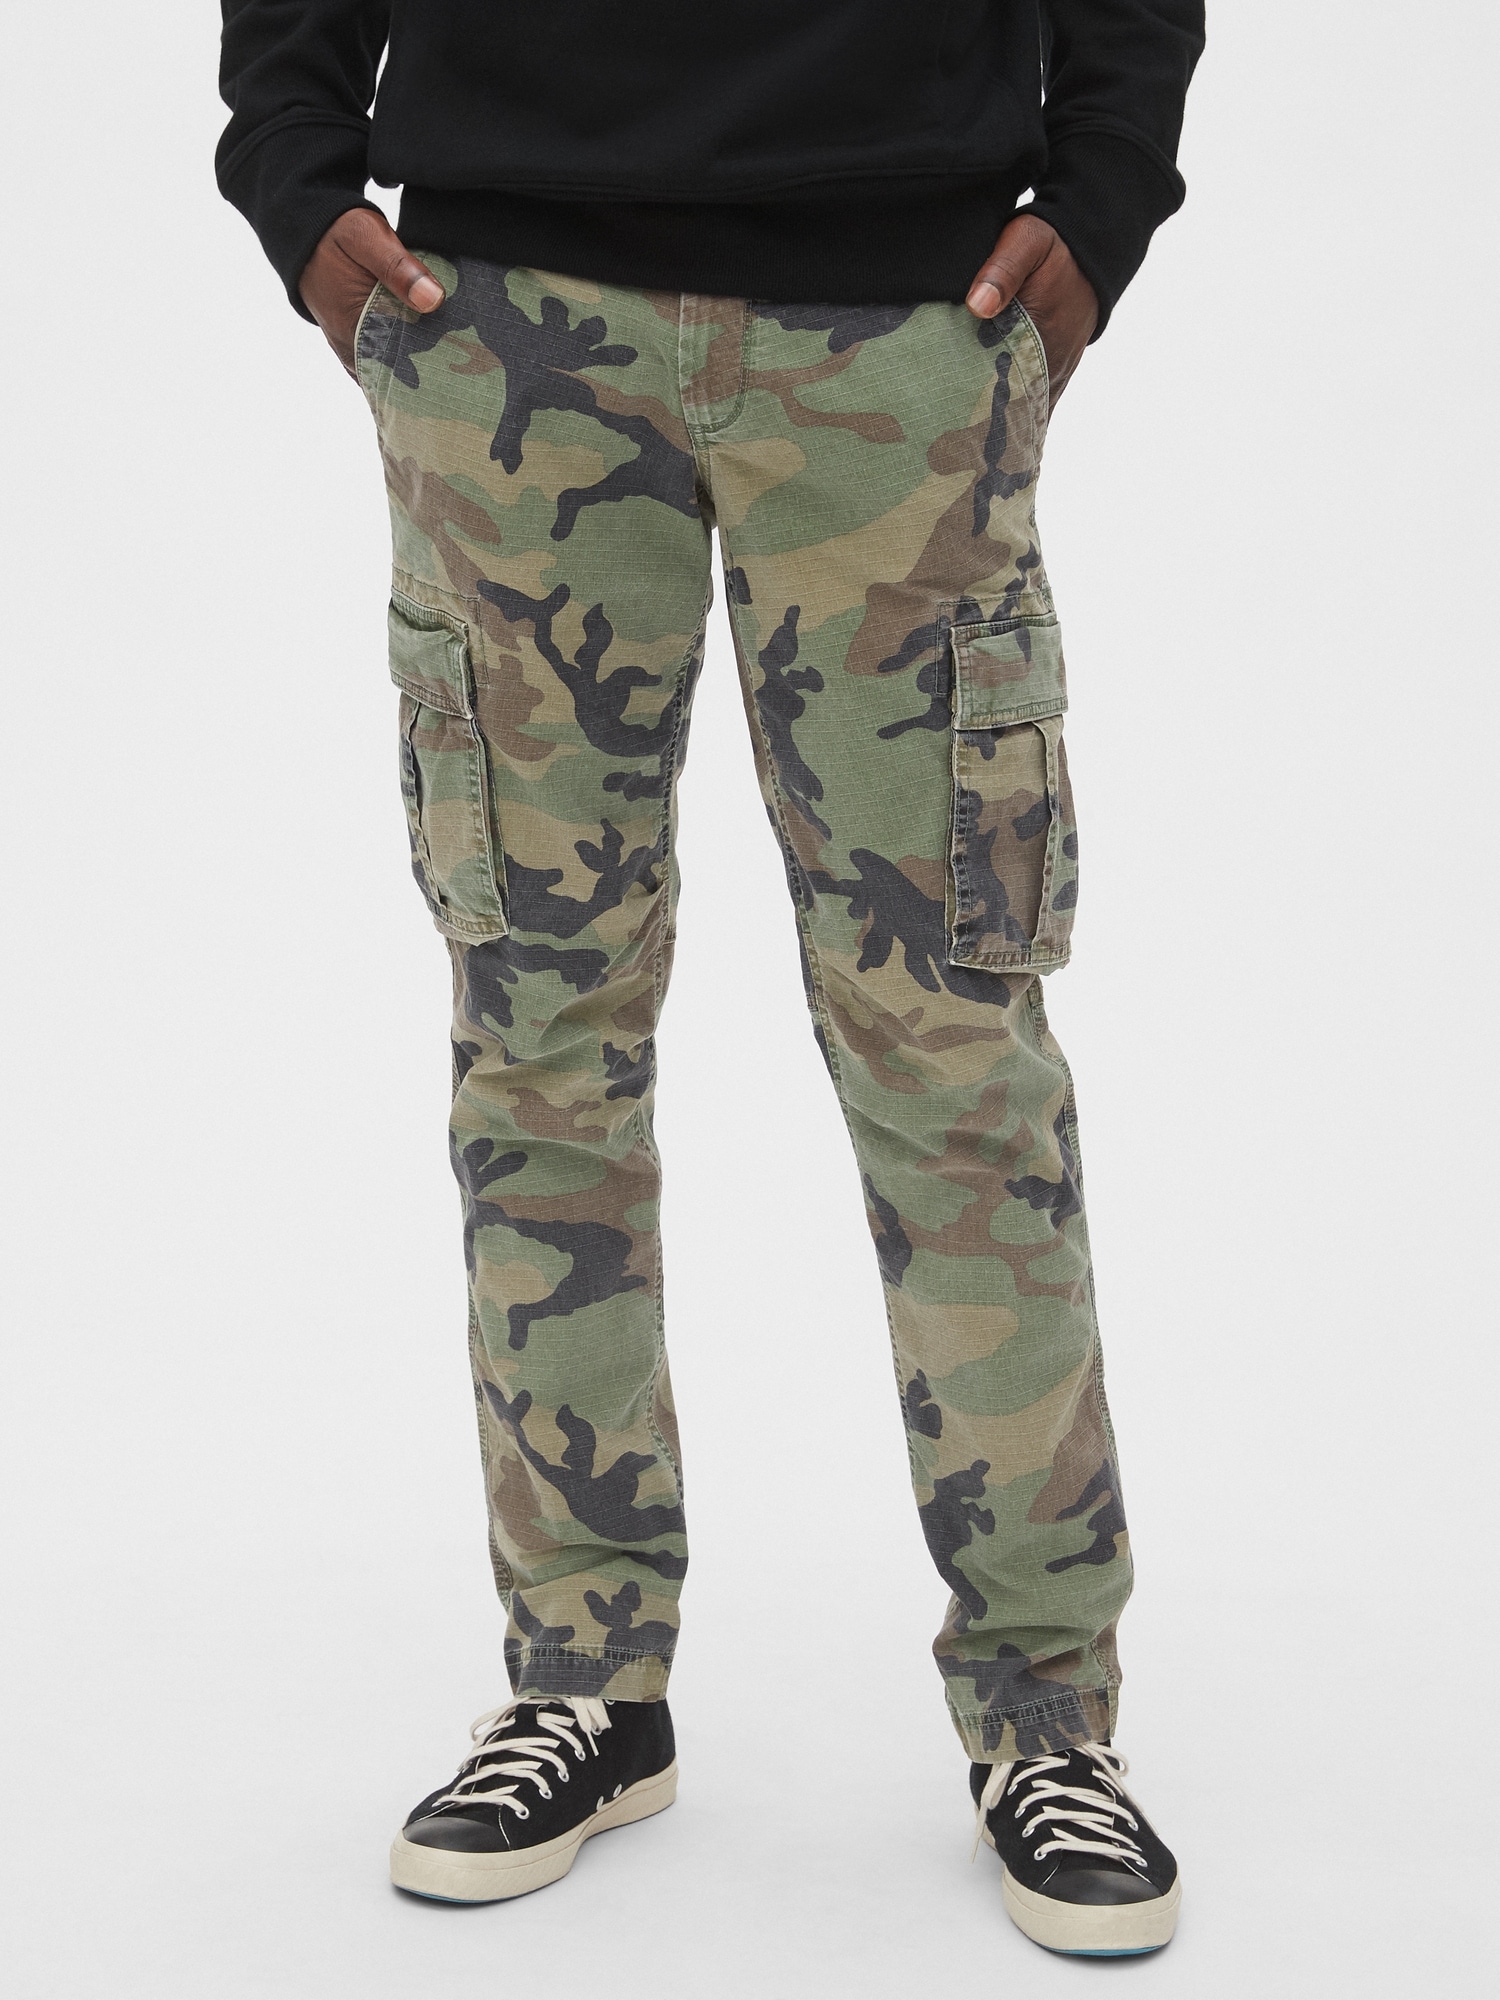 gap army pants